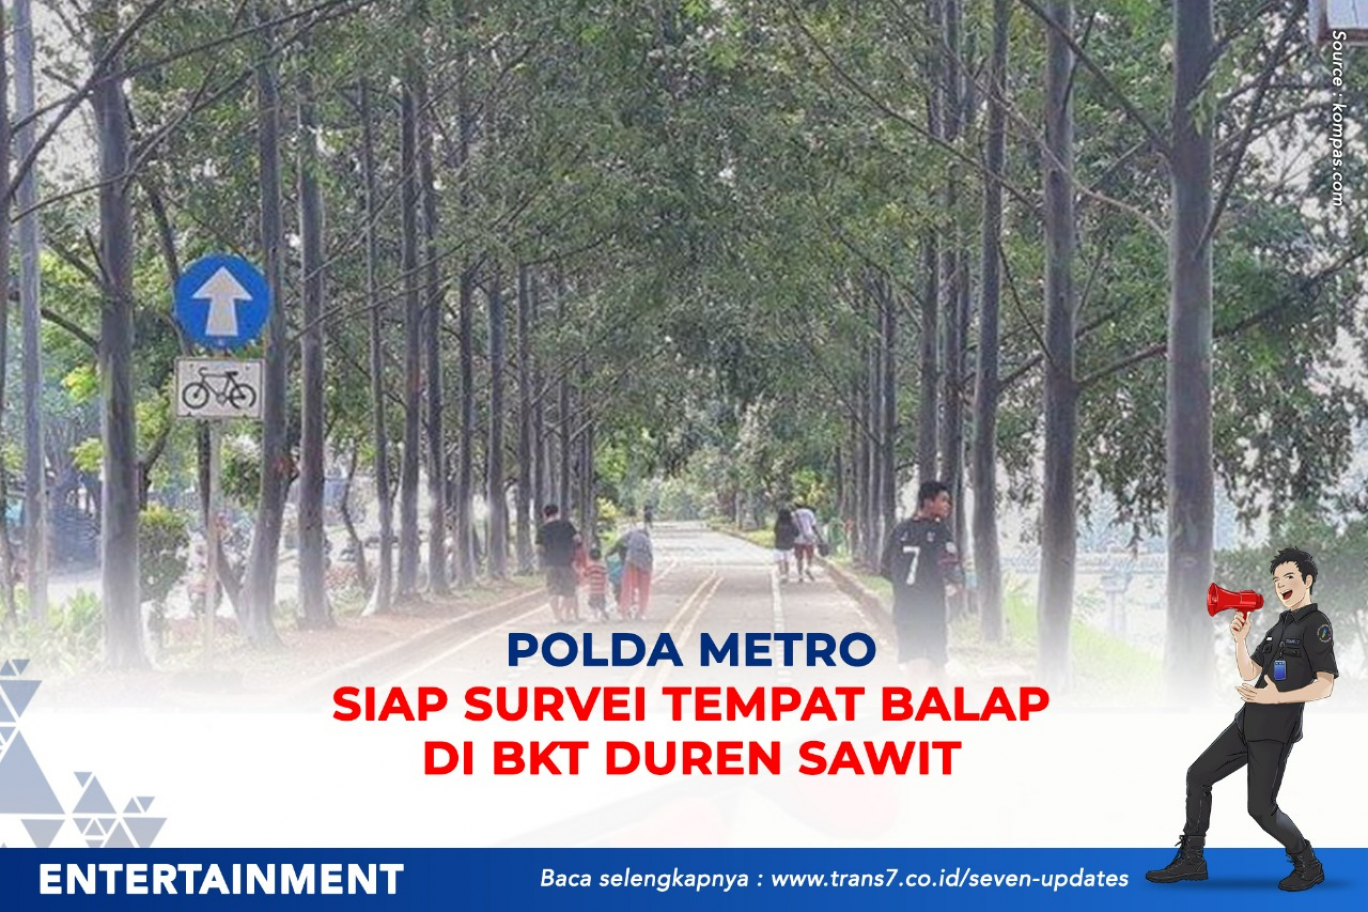 Polda Metro Siap Survei Tempat Balap Di BKT Duren Sawit